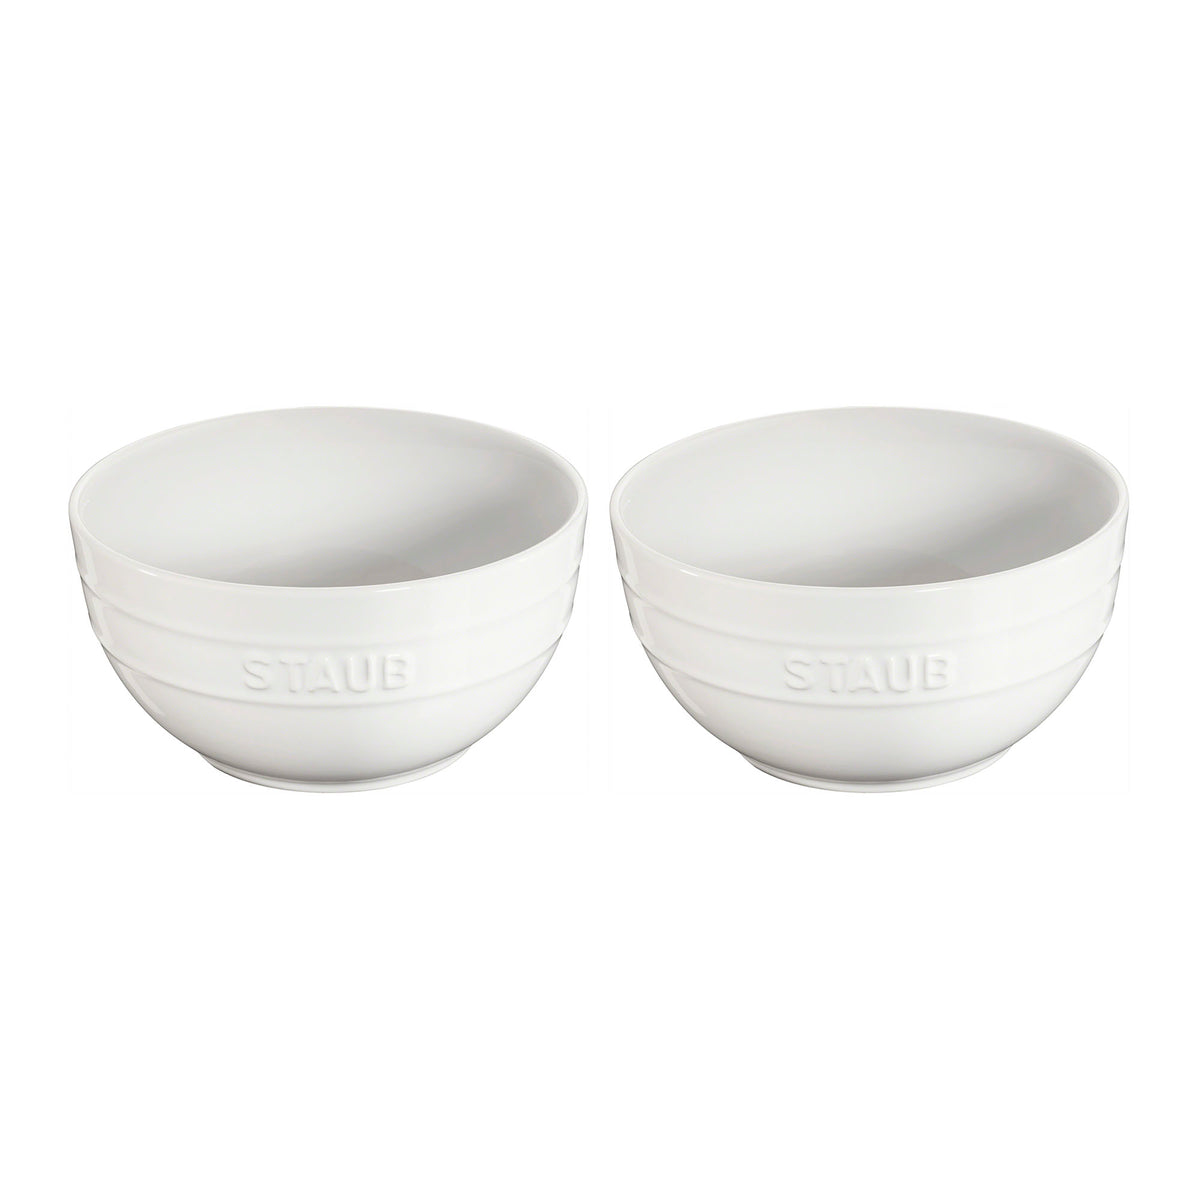 Ceramic Large Universal Bowl Set, Set of 2